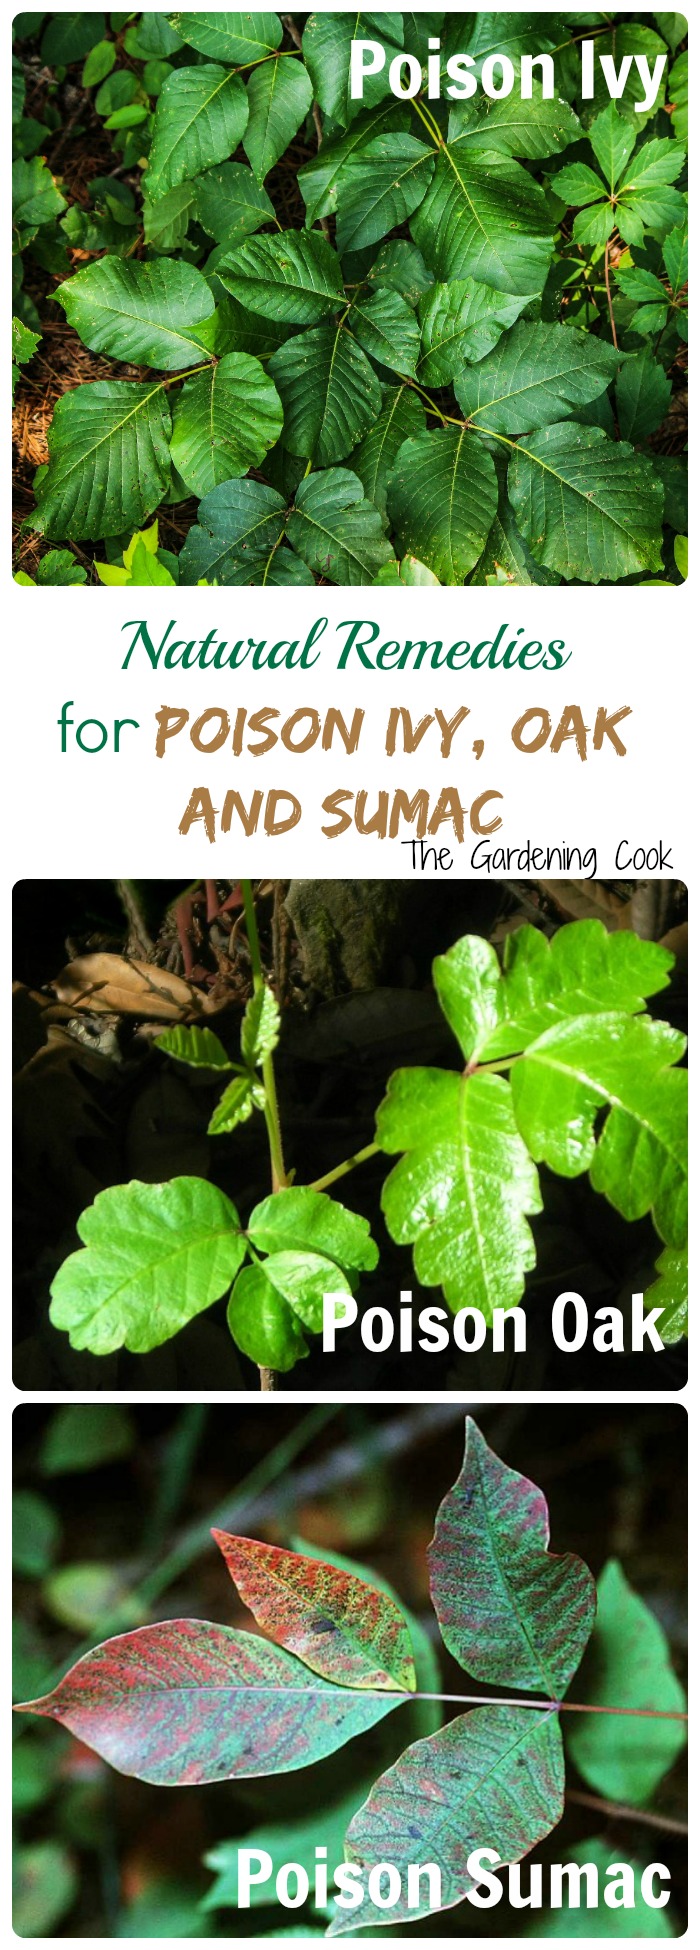 Rêbazên Xwezayî yên Dermankirina Poison Ivy an Poison Oak